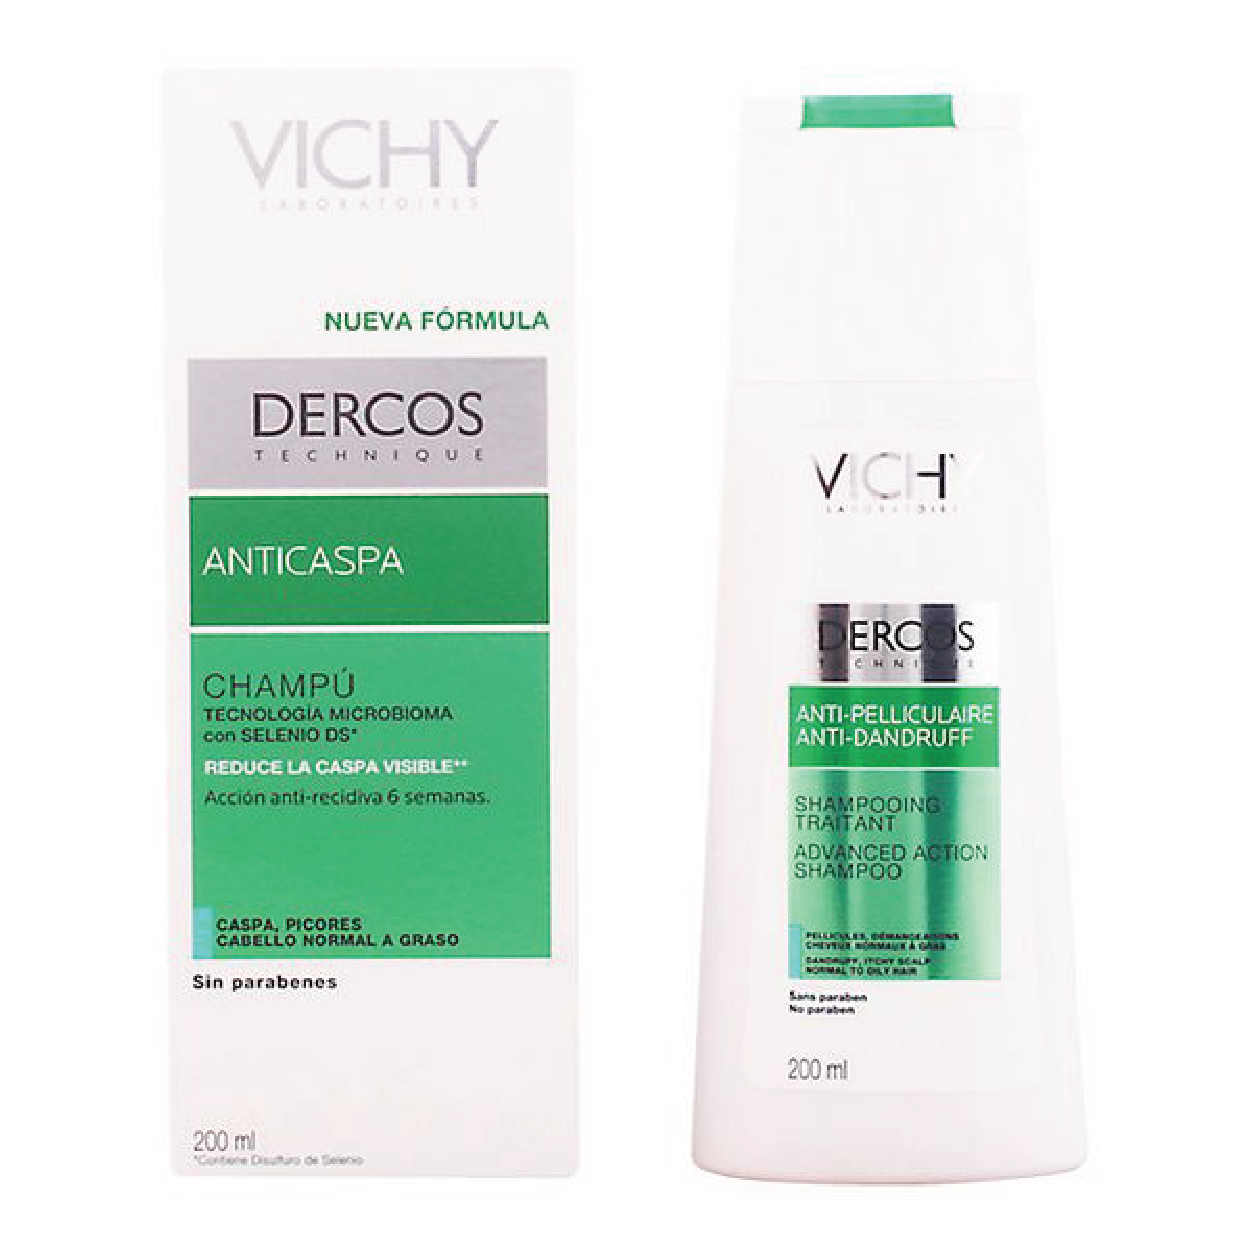 Vichy anti dandruff shampoo - Oily hair